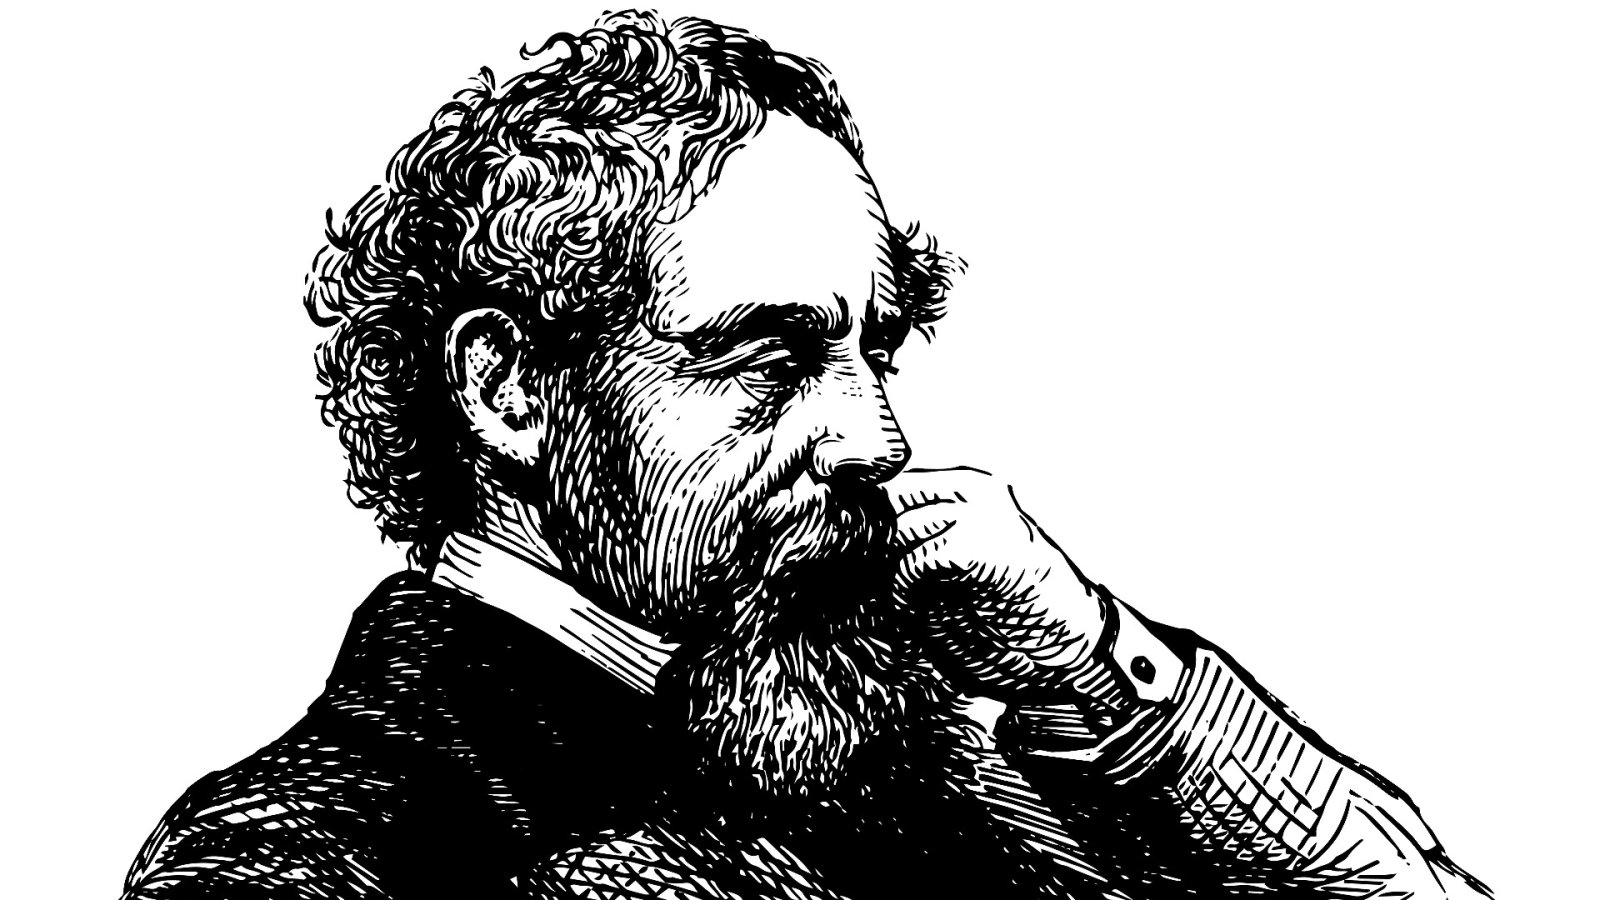 Et portræt af Dickens forsvundet i 150 år